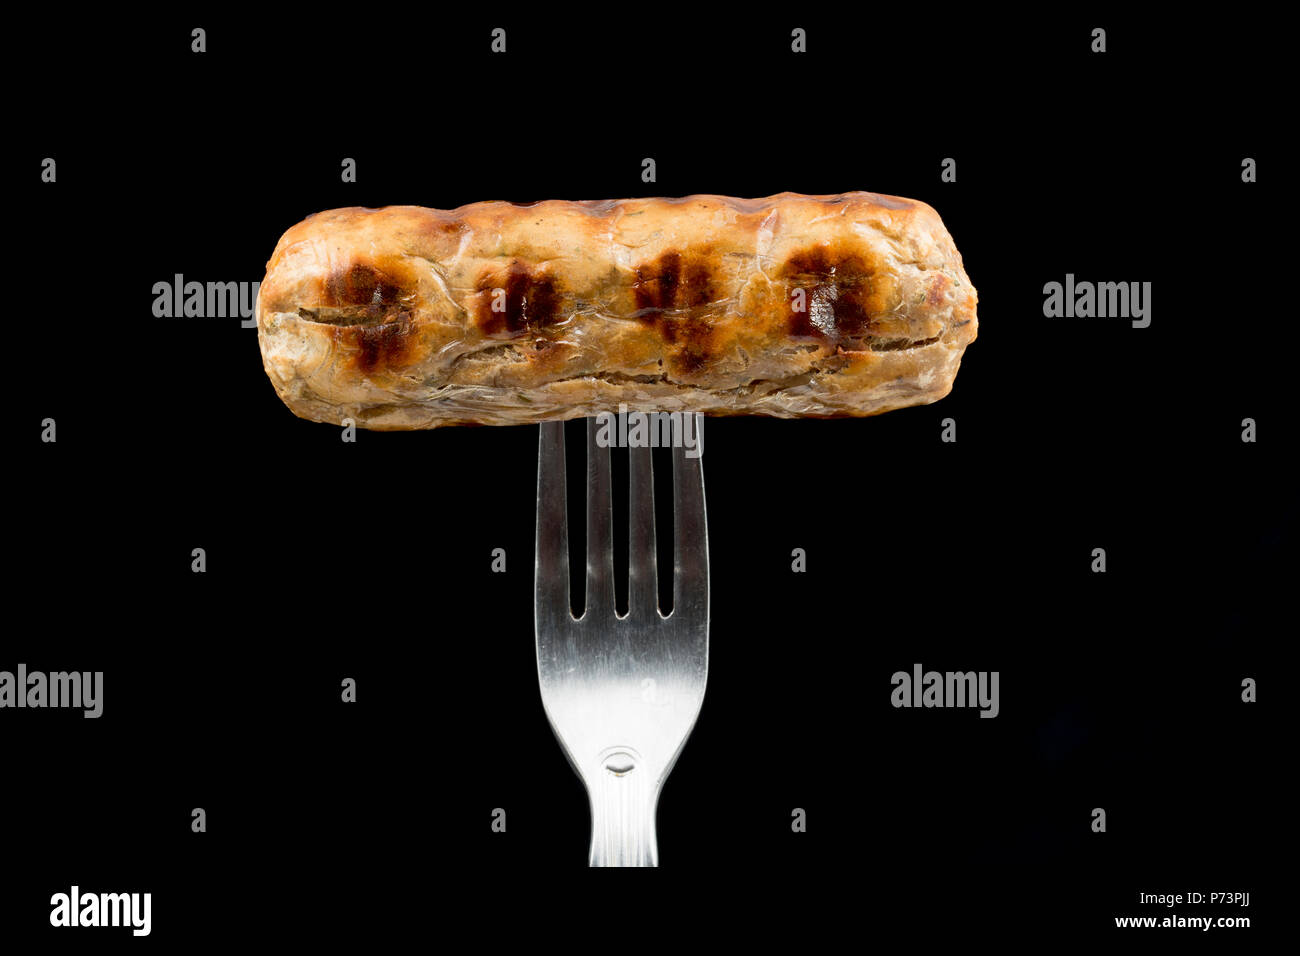 Eine vegane Quorn cumberland Wurst gekauft von einem Supermarkt, gegrillt wurde und auf einem schwarzen Hintergrund fotografiert. Großbritannien Stockfoto